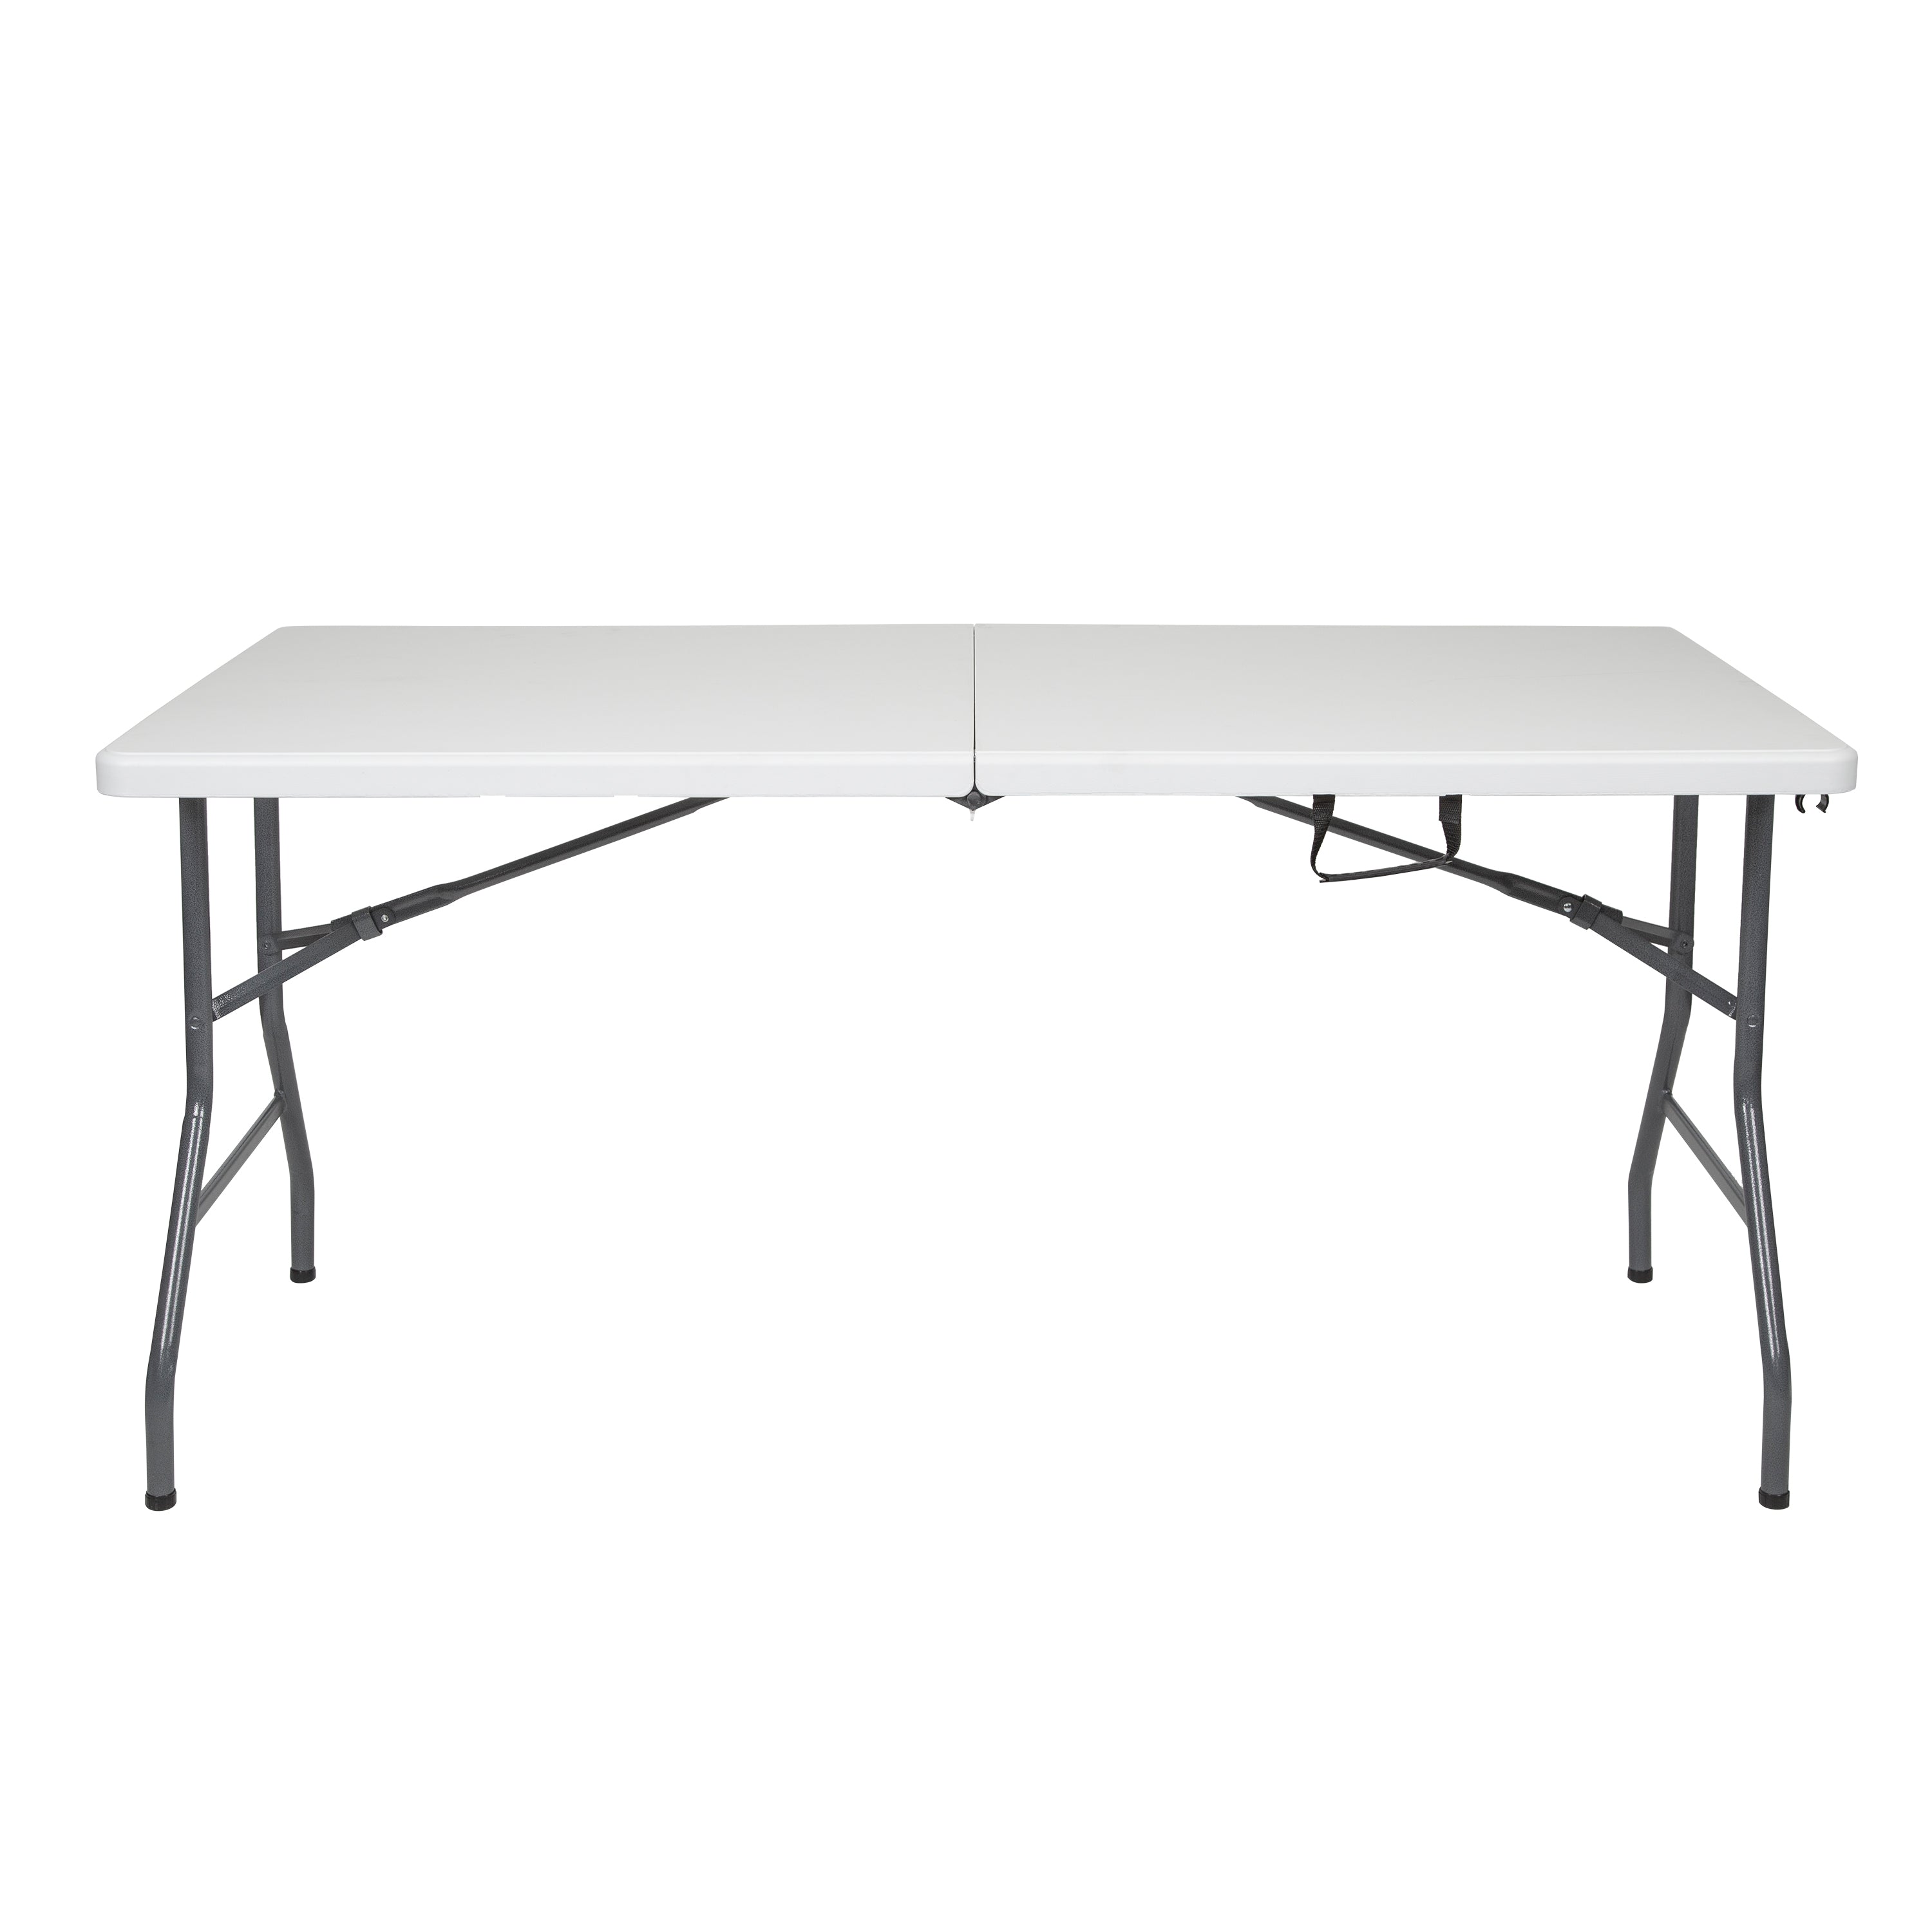 Folding Table - White - 29 In X 60 In X 29 In